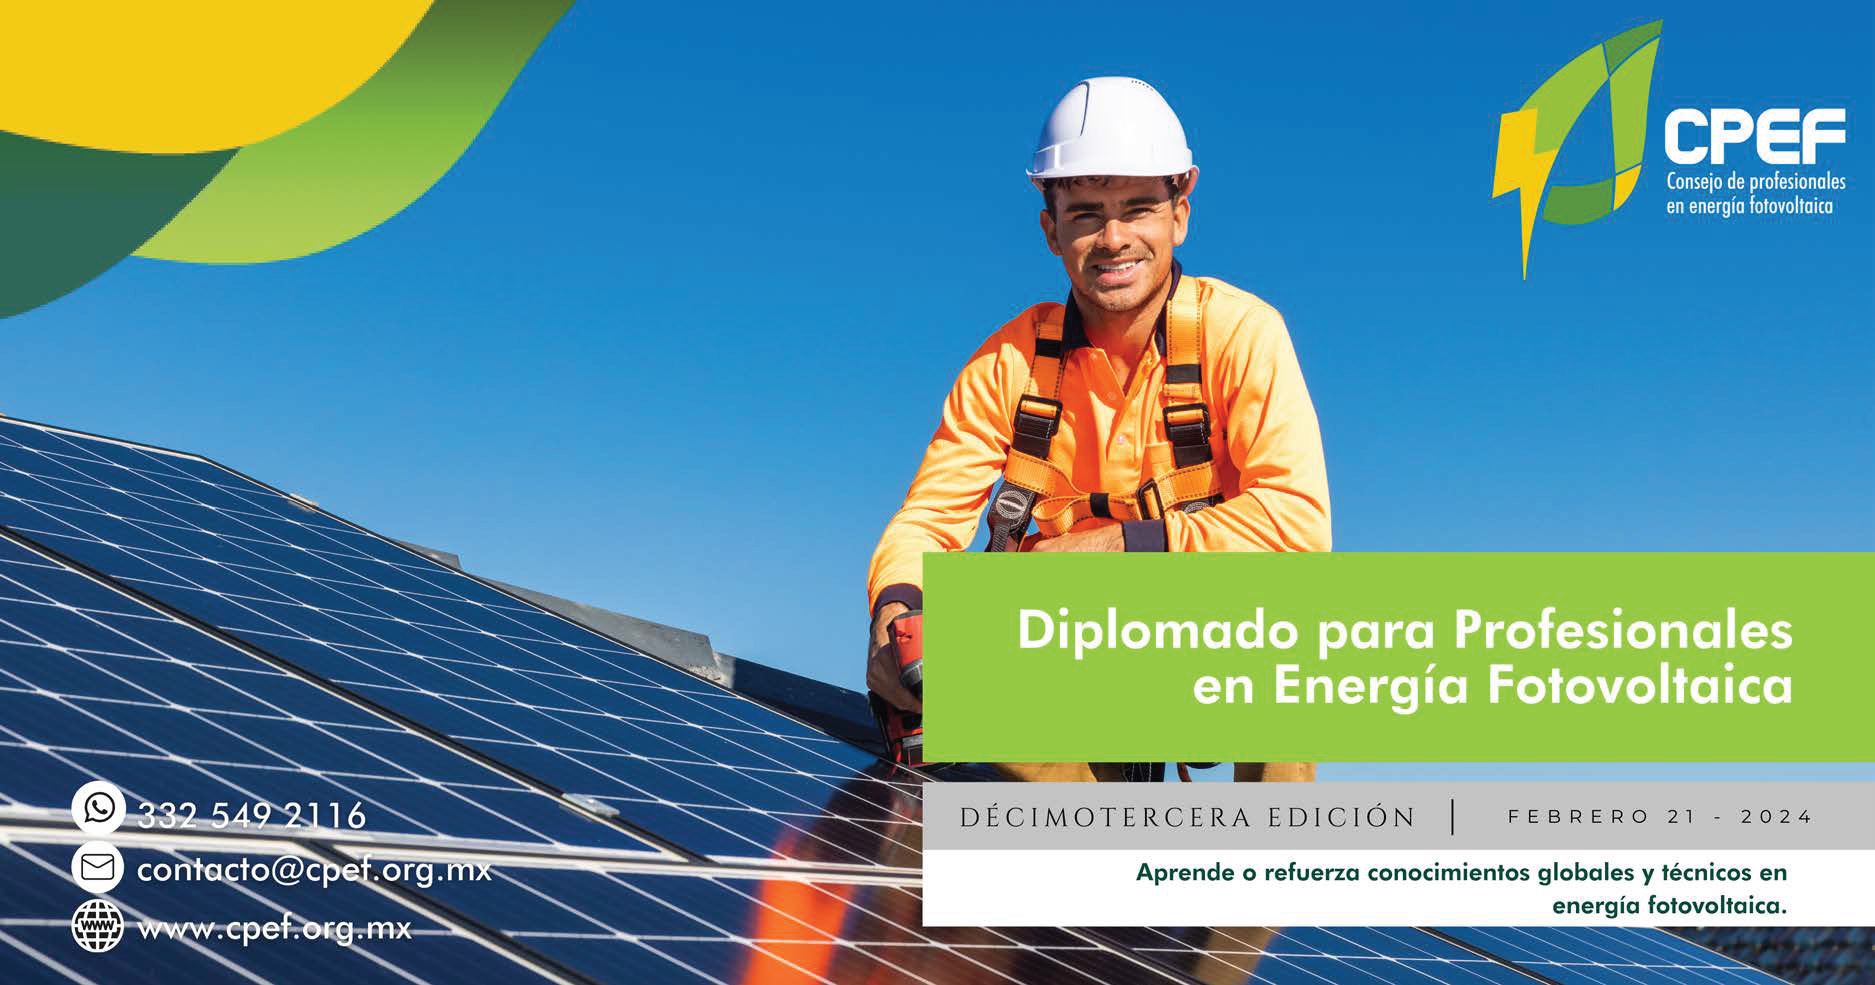 T13 Diplomado para profesionales en energía fotovoltaica (1)_Page_01